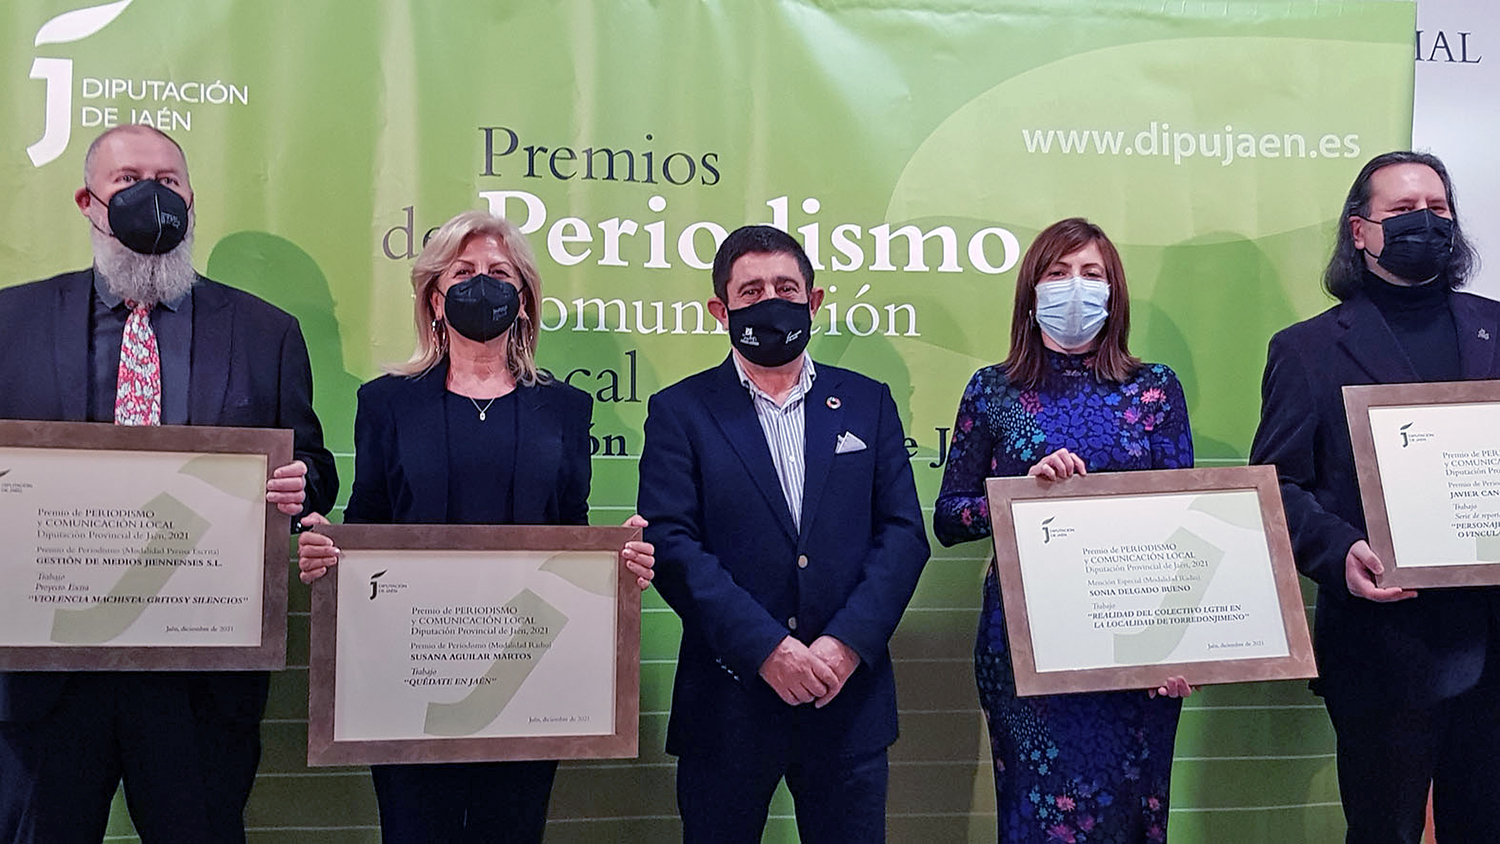 Entregados los Premios de Comunicación Local 2021 de Diputación a Susana Aguilar, Javier Cano y Gestión de Medios Jienenses